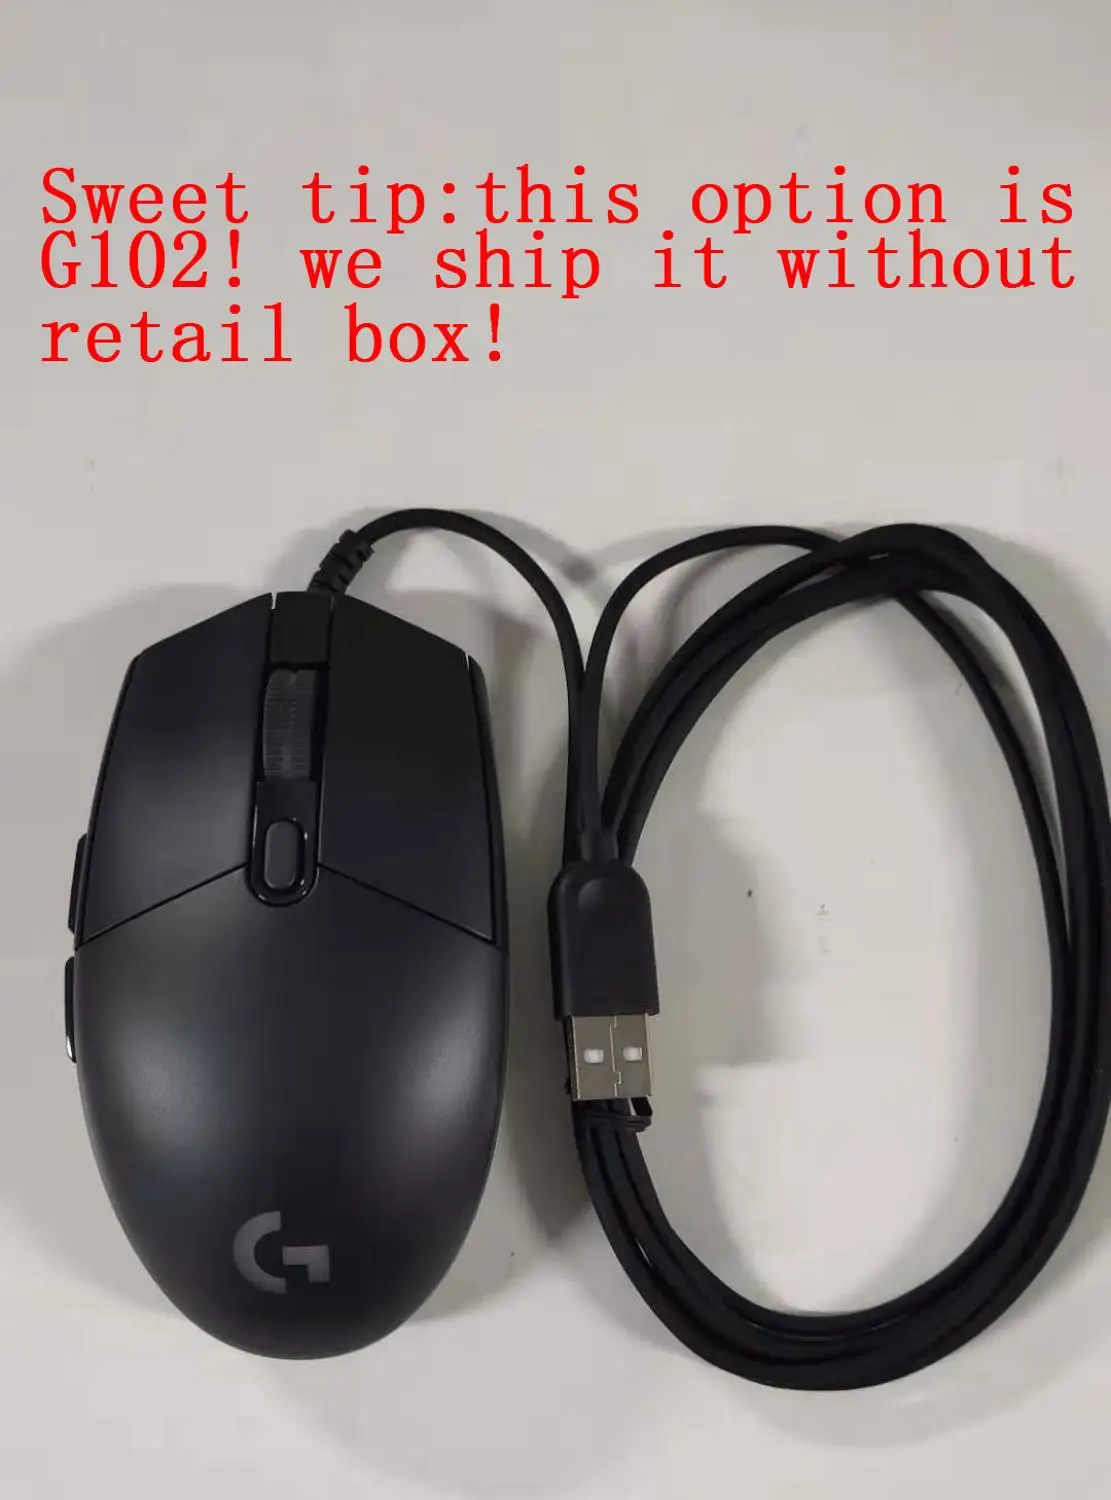 Logitech G502 HERO/G102 высокопроизводительная игровая мышь с 16000 dpi Программируемый настраиваемый LIGHTSYNC RGB для мыши геймера - Цвет: g102 without box